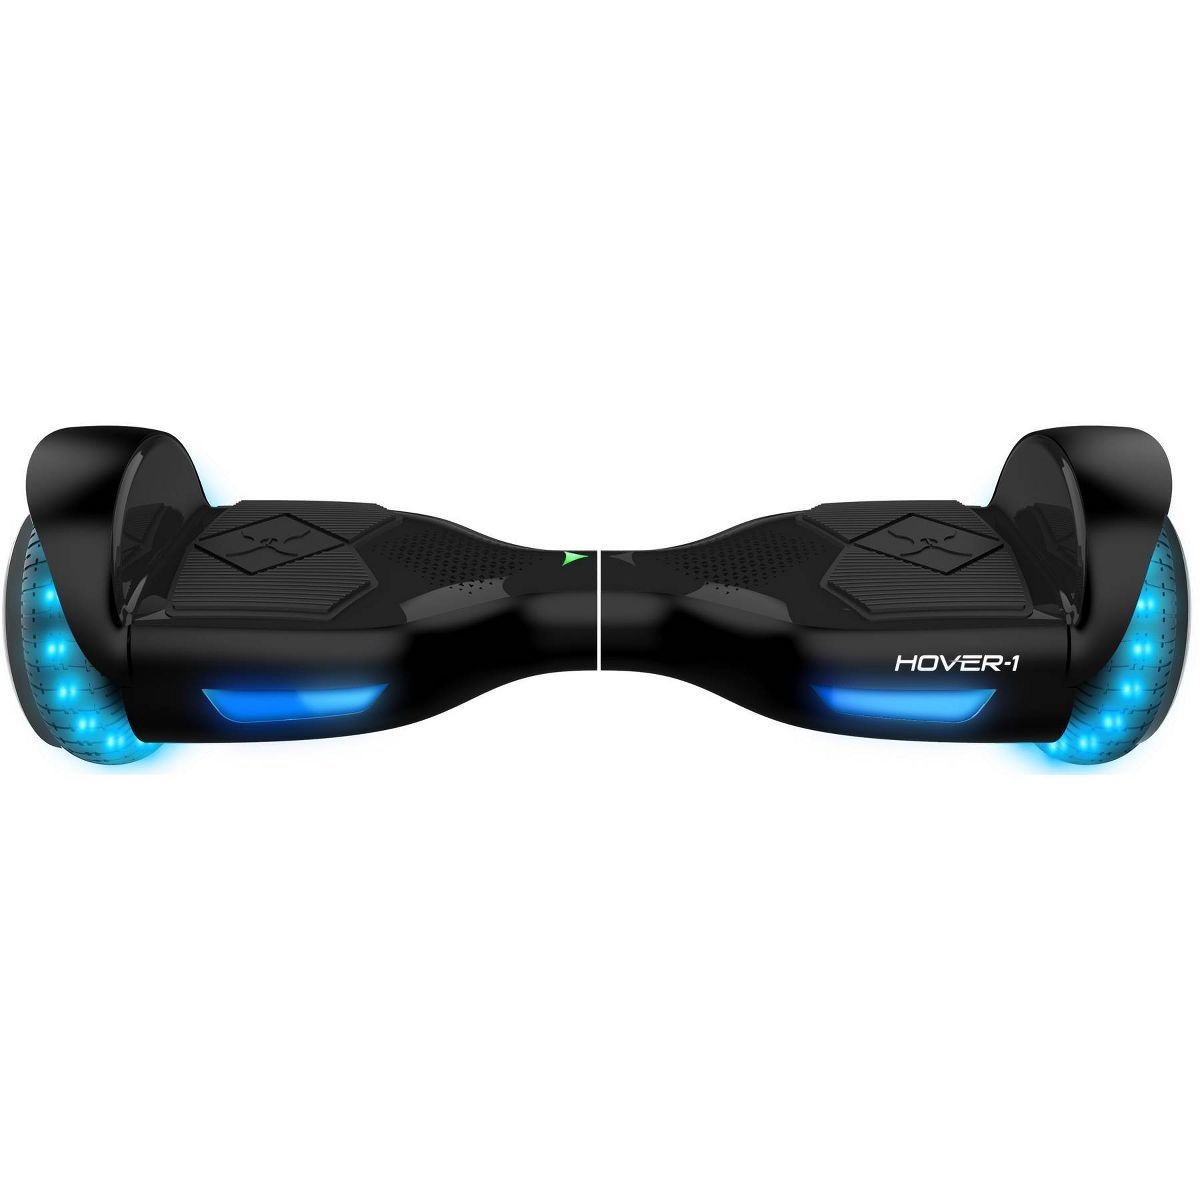 Hover 1 i-200 Hoverboard - Black | Target